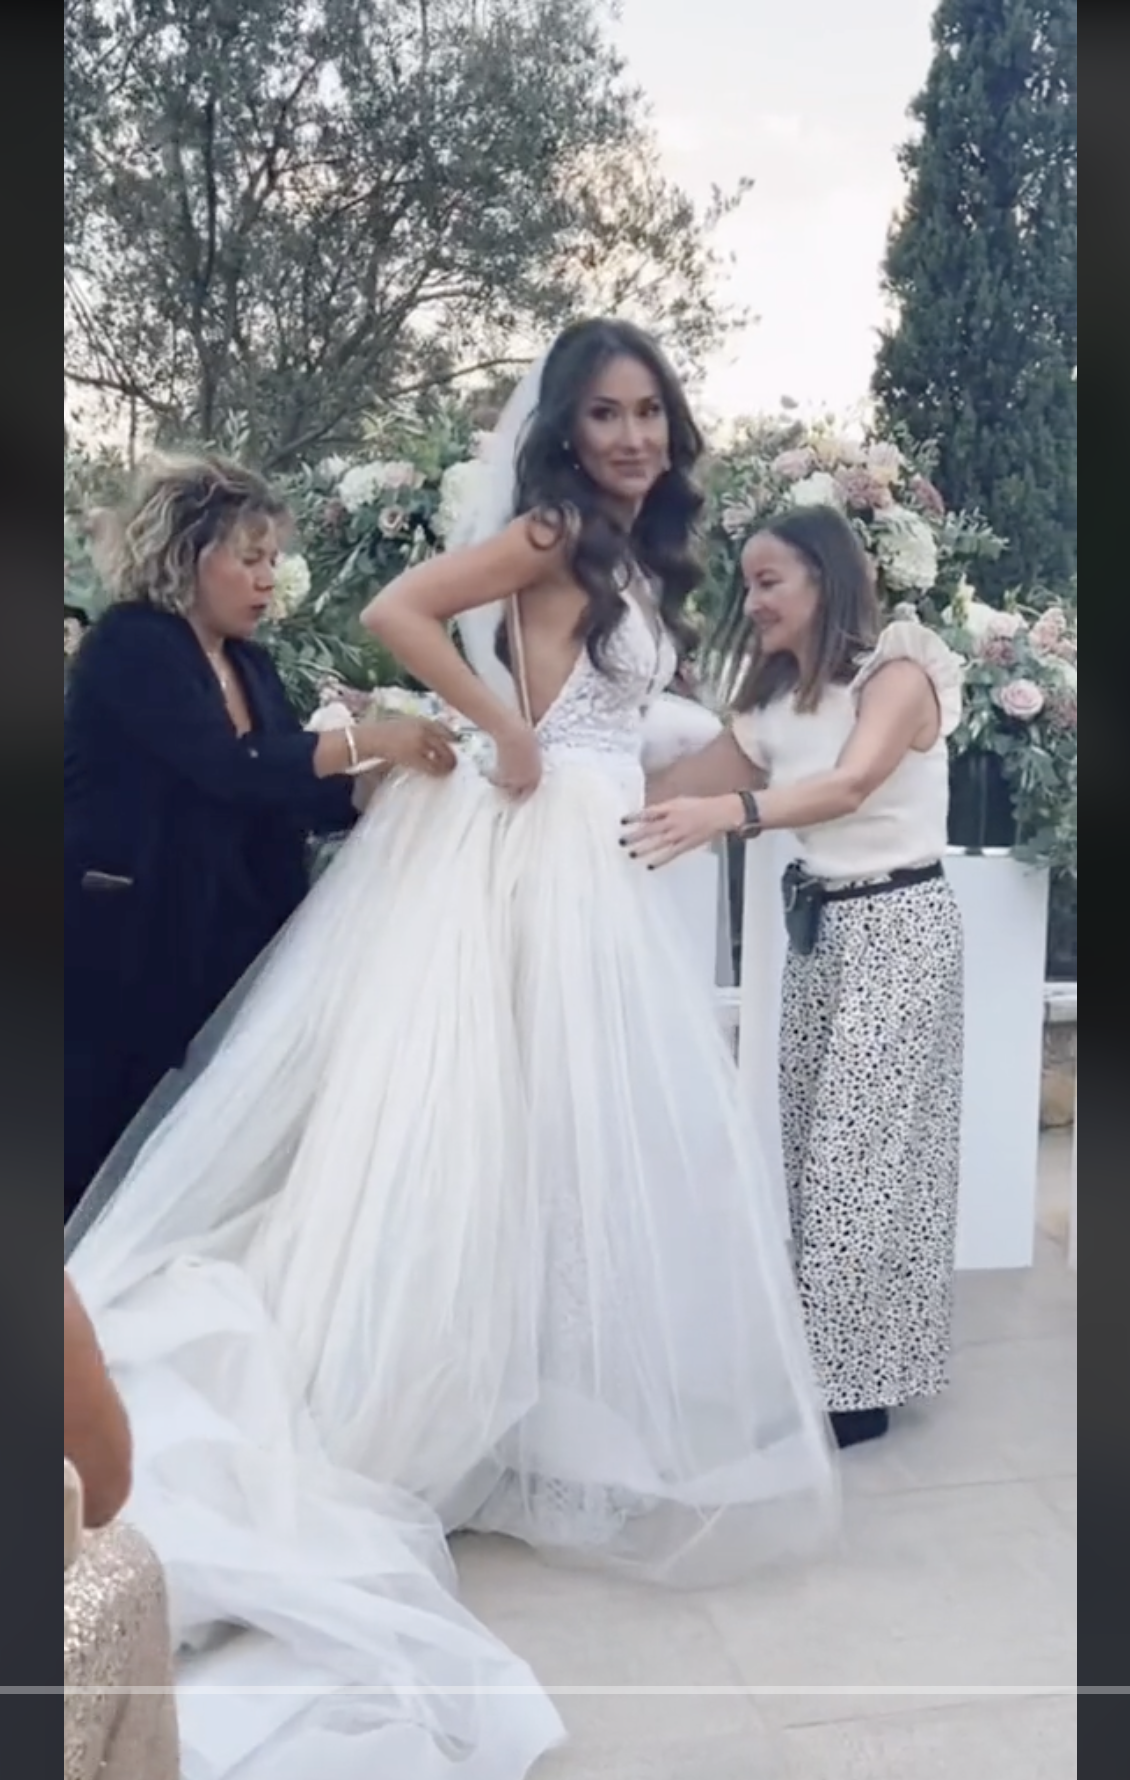 Becky Jefferies beim Anziehen des Rocks und der Schleppe ihres Brautkleides, zu sehen in einem Video vom 5. Mai 2022 | Quelle: tiktok.com/@jetsetbecks